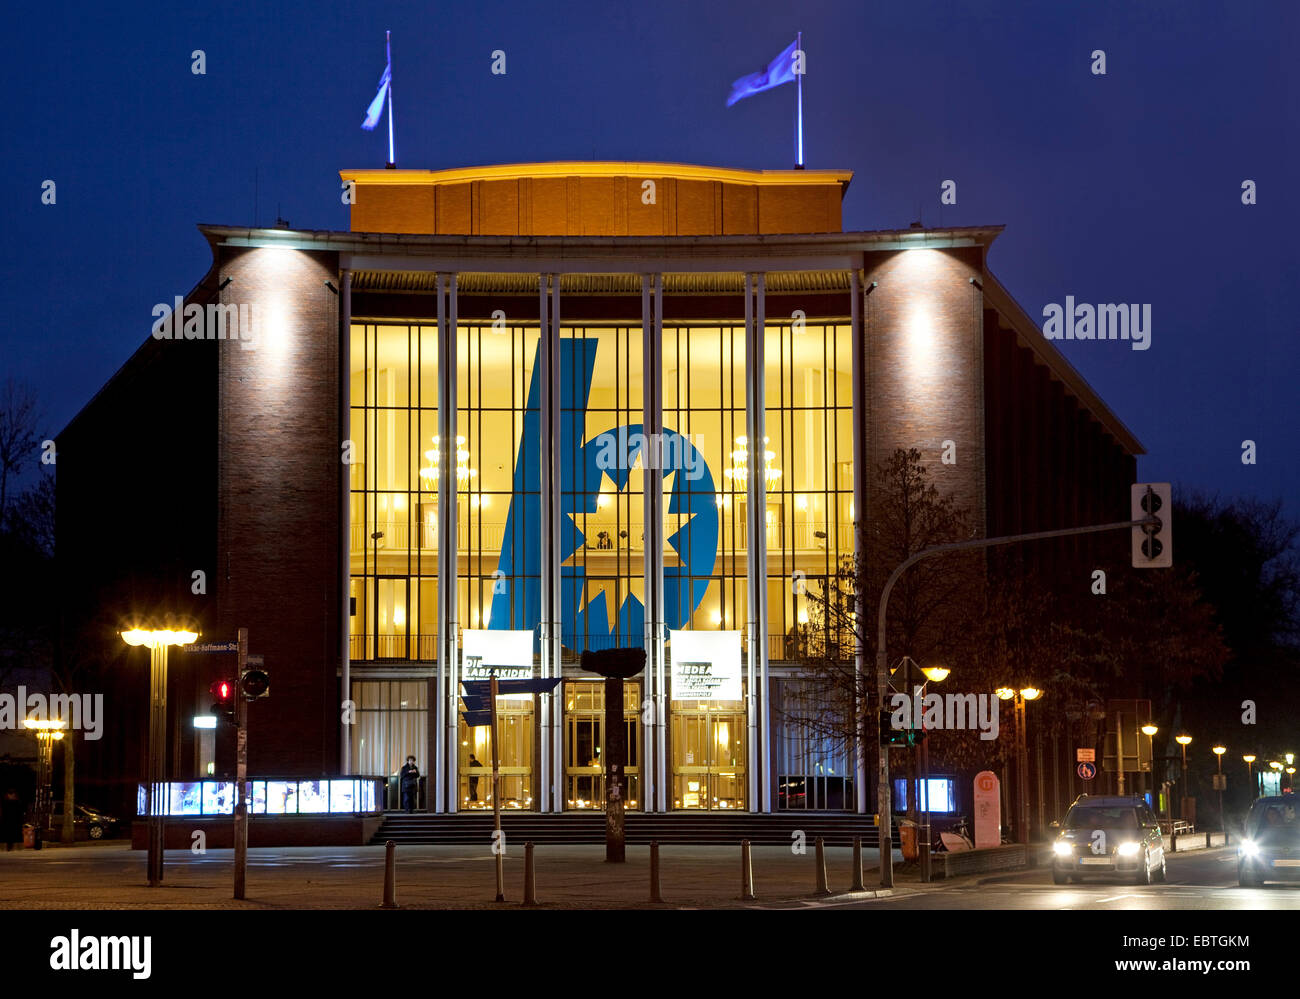 Teatro illuminato og Bochum, Schauspielhaus di Bochum, a blue ora, in Germania, in Renania settentrionale-Vestfalia, la zona della Ruhr, Bochum Foto Stock